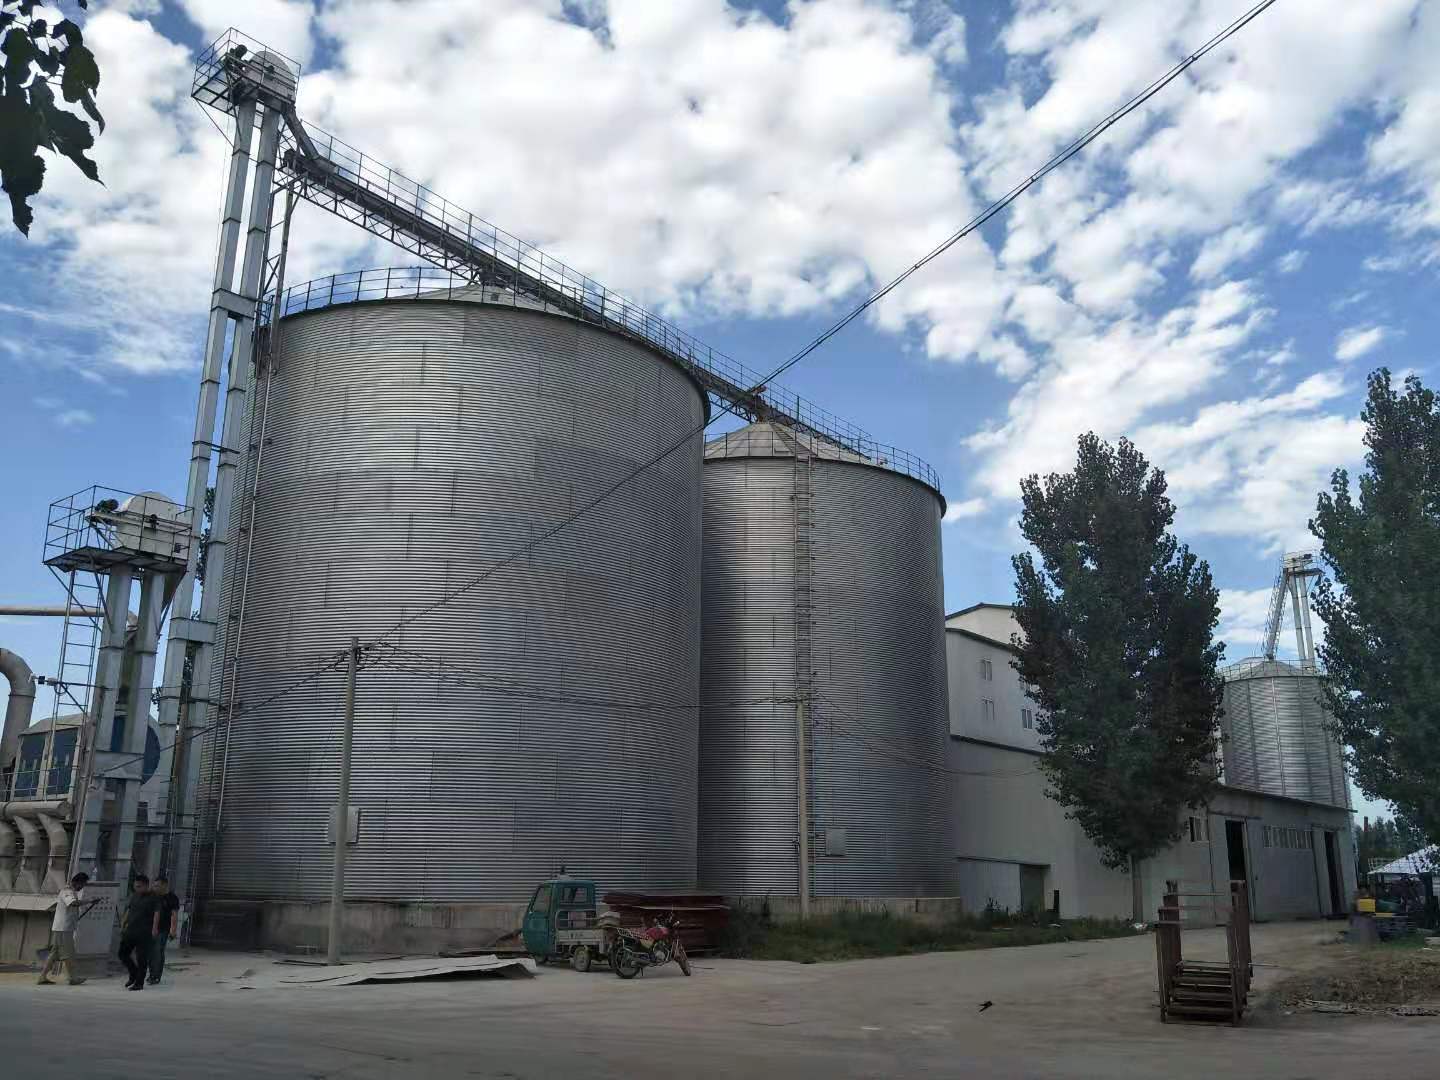 grain-silo-manufacture